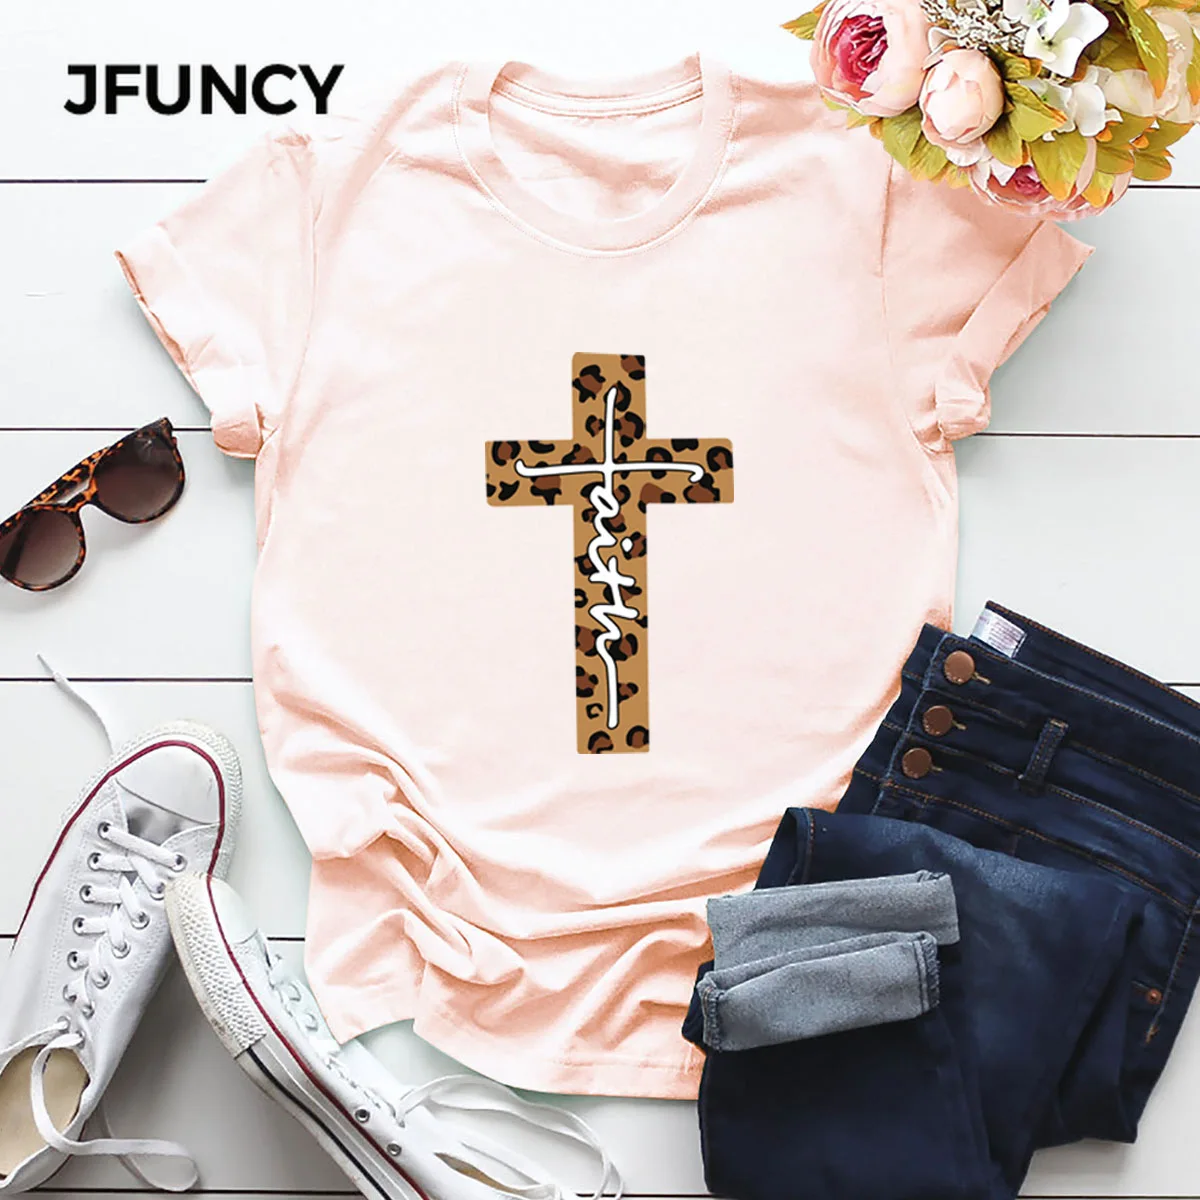 JFUNCY Cross Print T Shirt Women Summer Shirts 100% Cotton Short Sleeve Woman T-shirt Oversize Casual Female Tees Tops